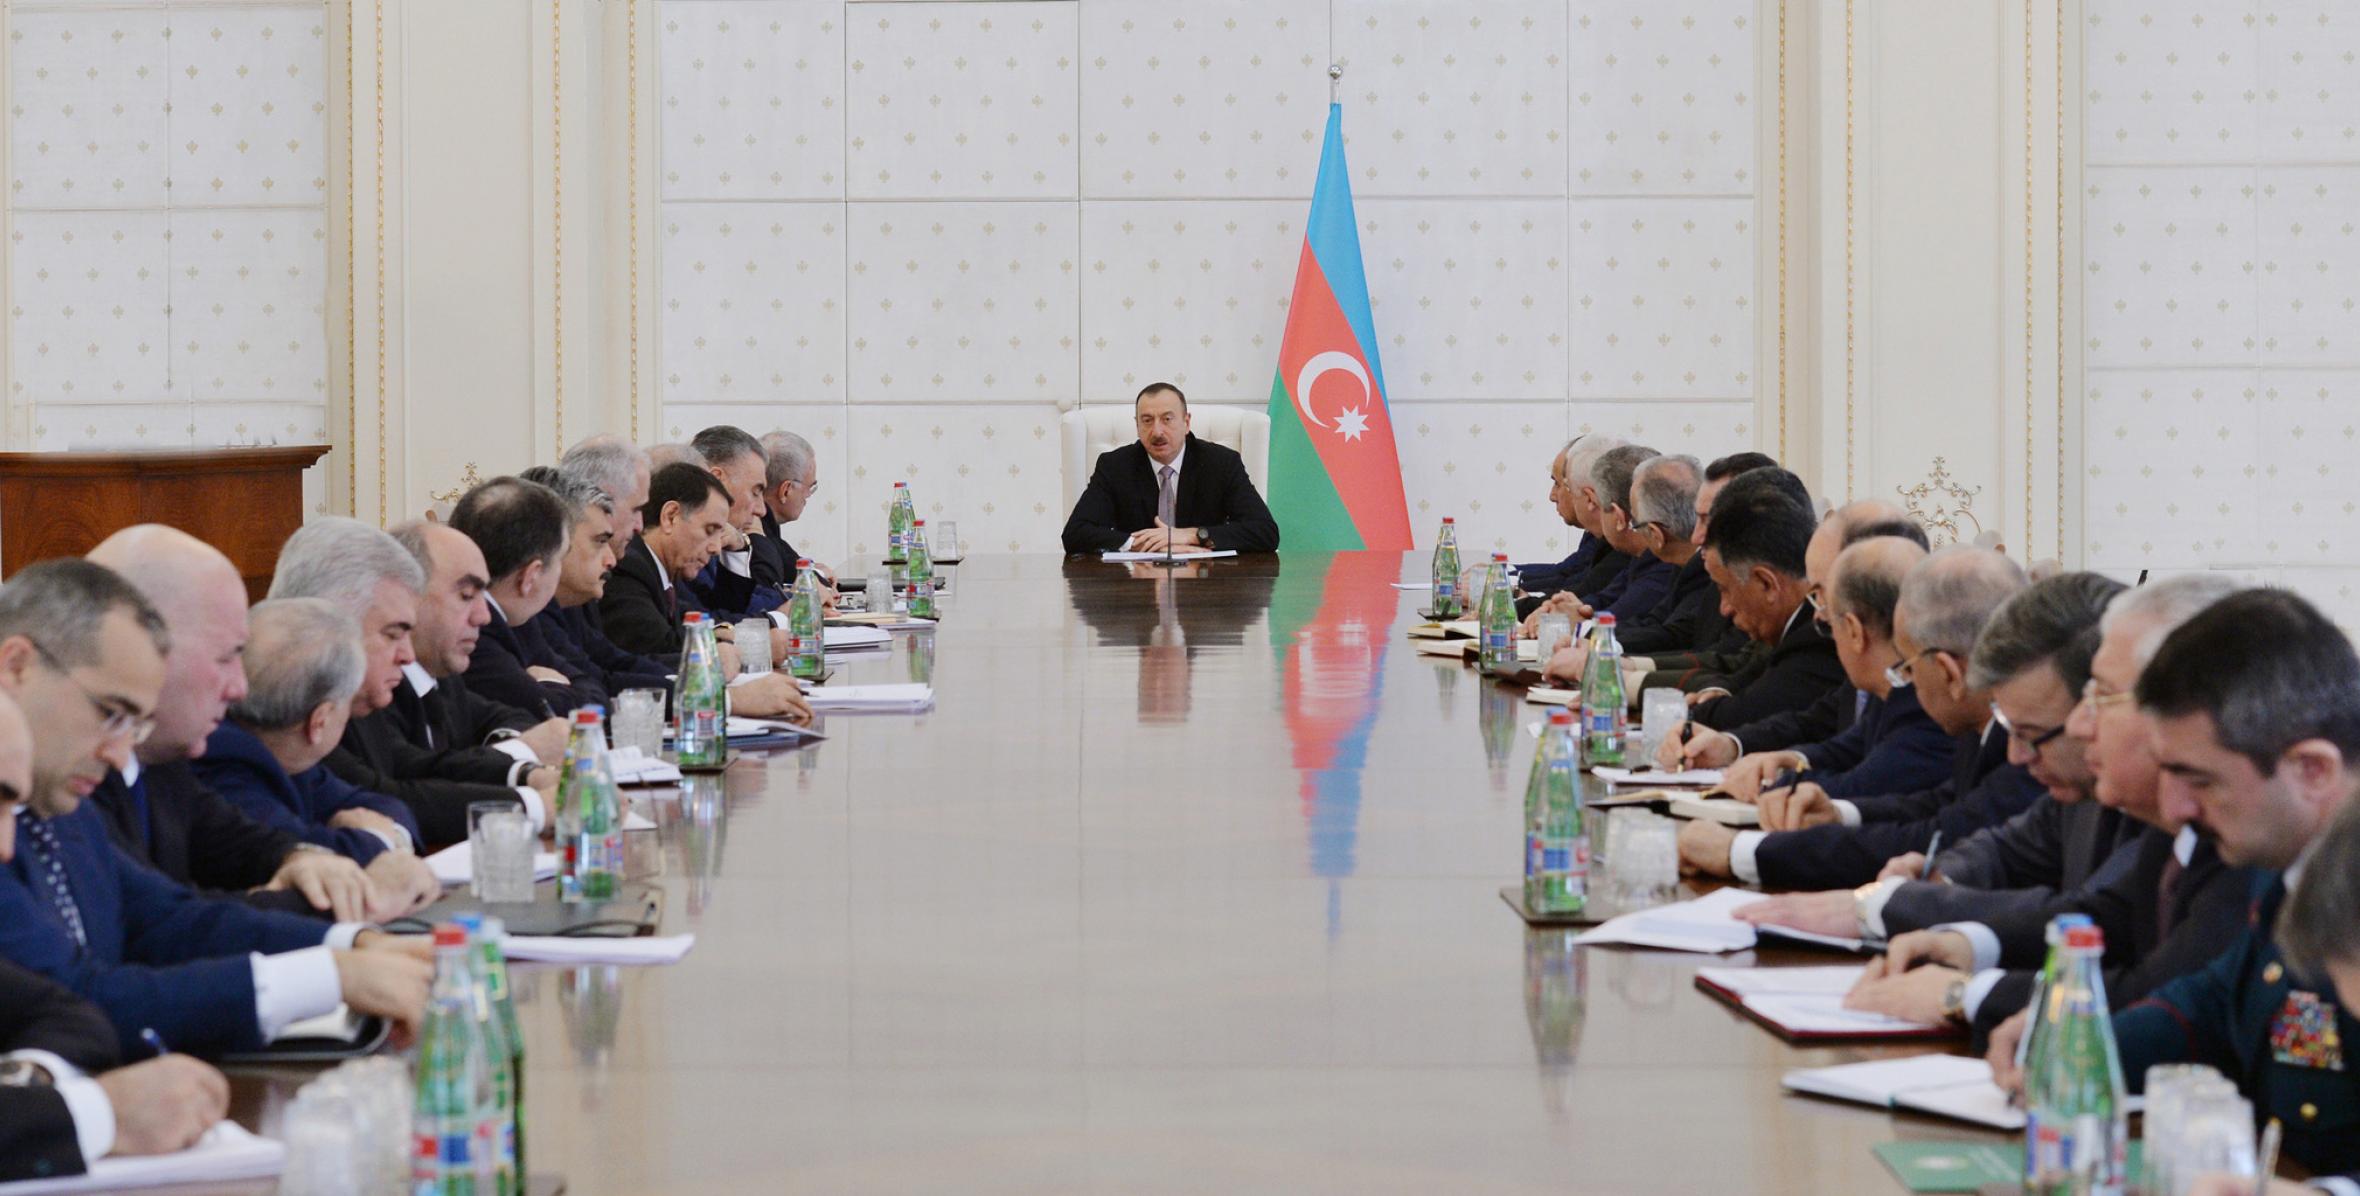 Заключительная речь Ильхама Алиева на заседании Кабинета Министров, посвященном итогам социально-экономического развития за 2014 год и предстоящим в 2015 году задачам